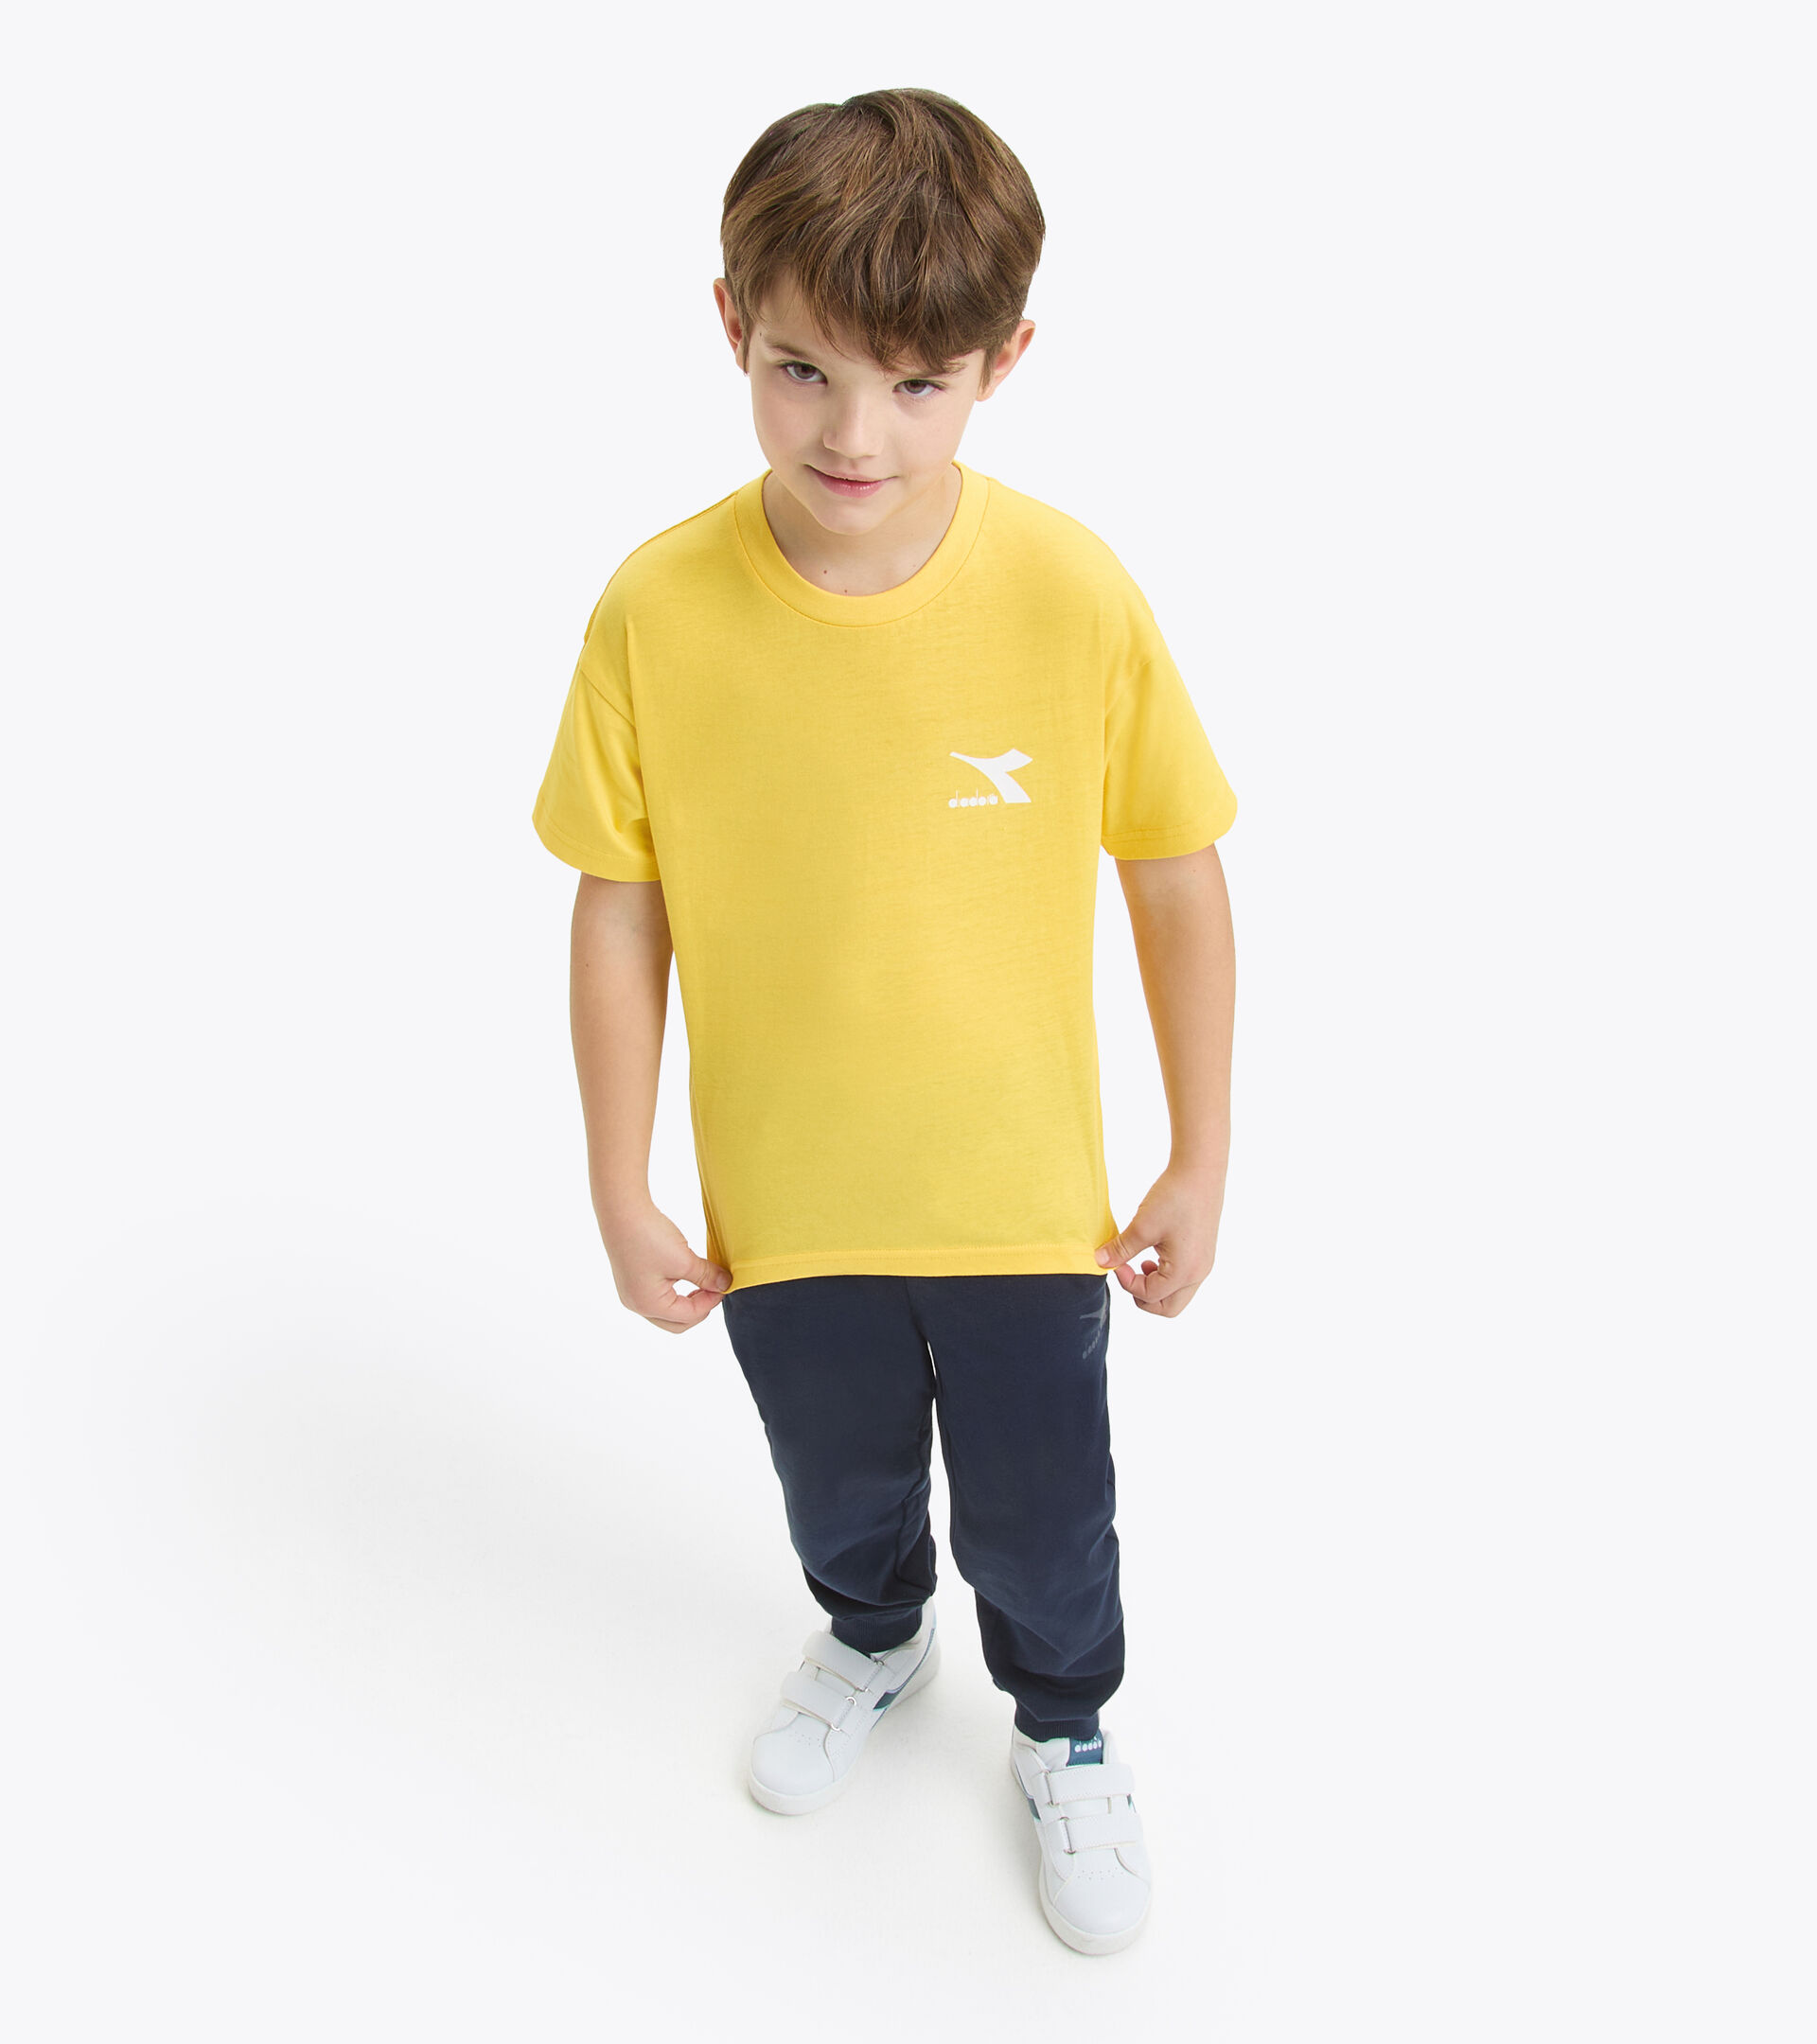 Cotton t-shirt - Kids JU.T-SHIRT SS SL ASPEN GOLD - Diadora